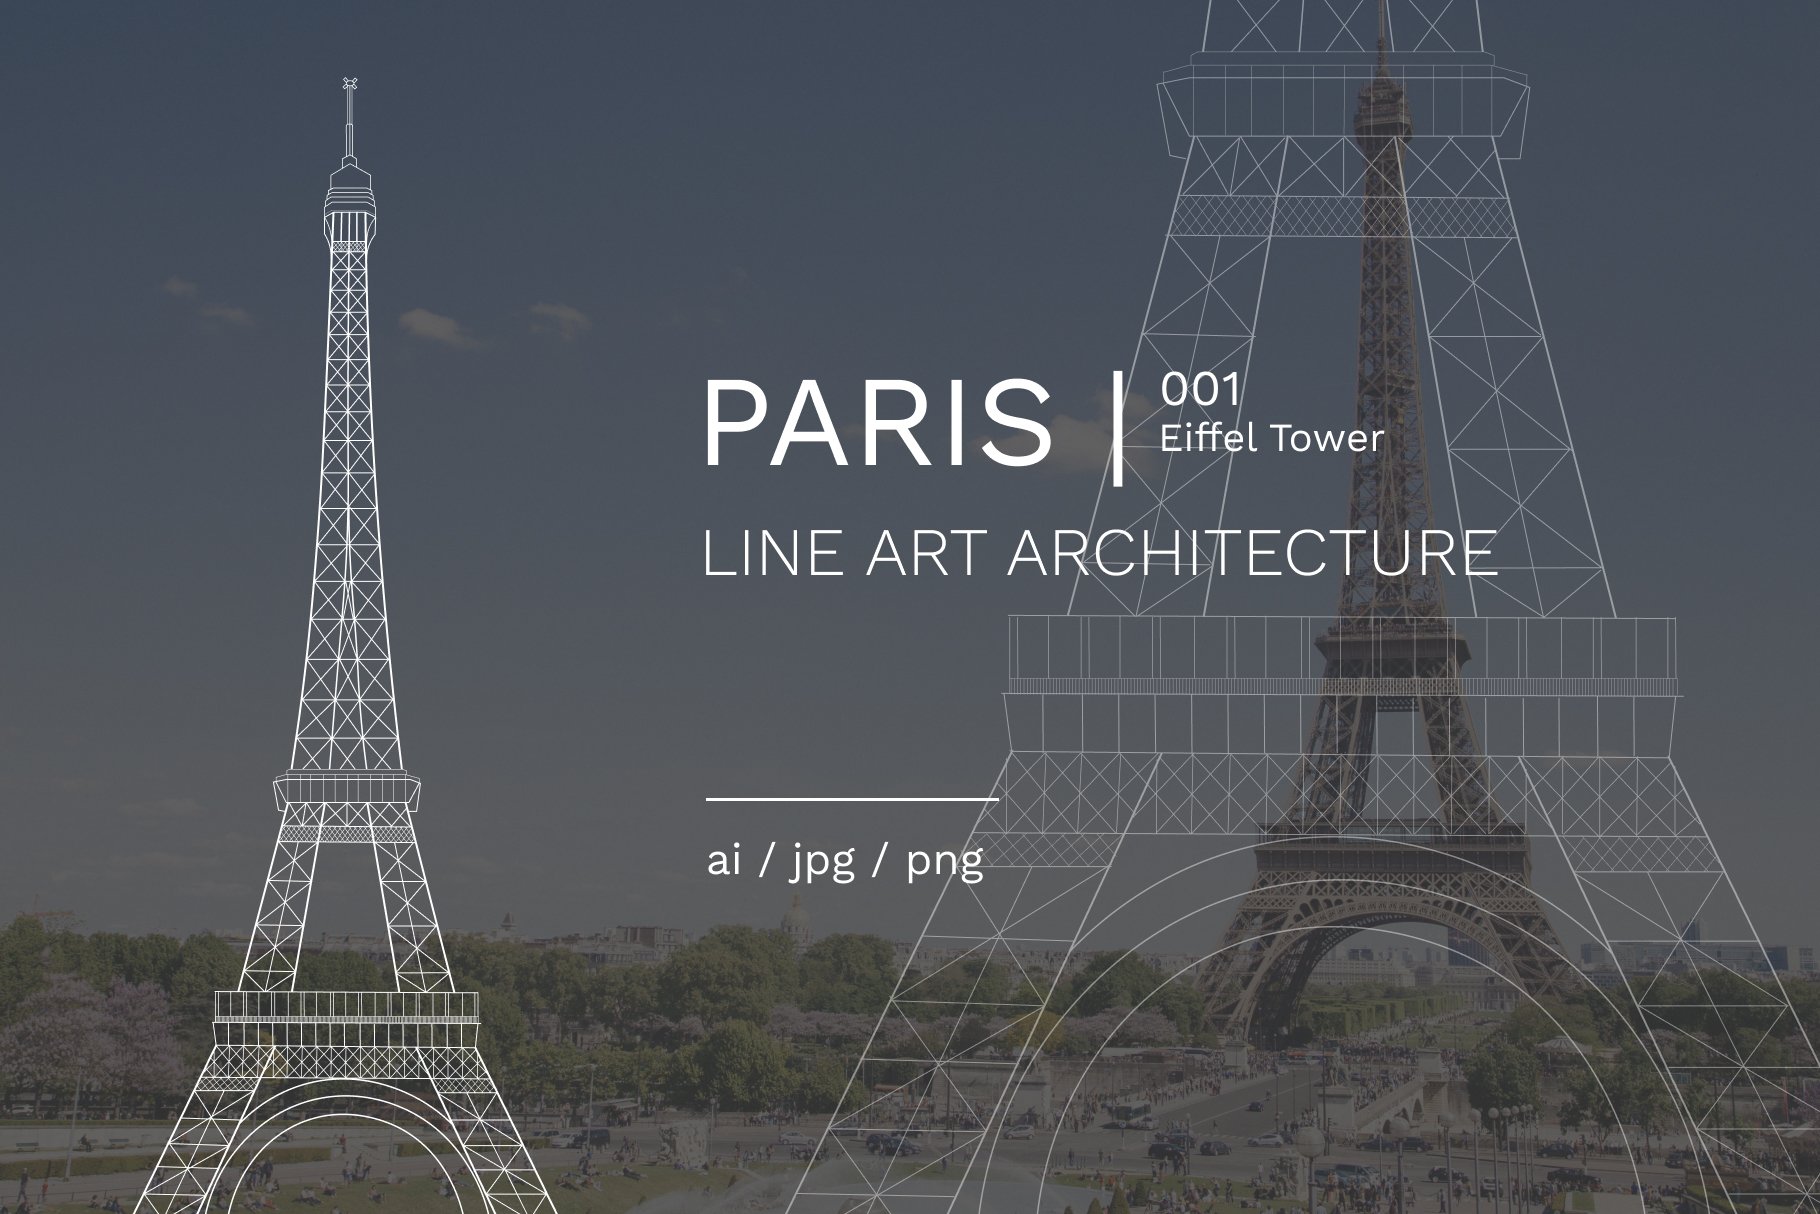 Paris 001 | Eiffel Tower cover image.